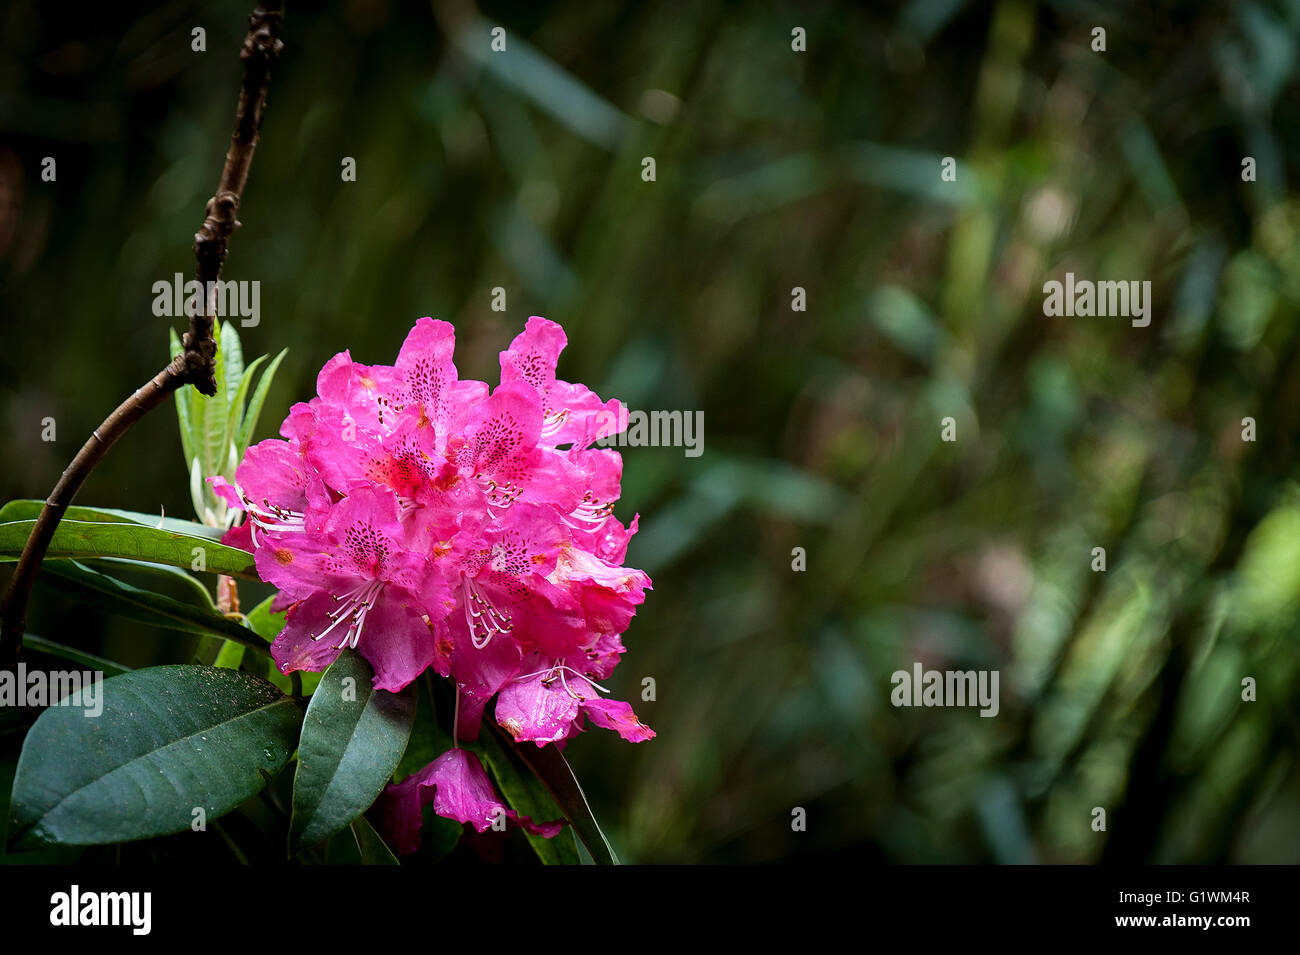 Rhododendron. Cynthia. Stock Photo